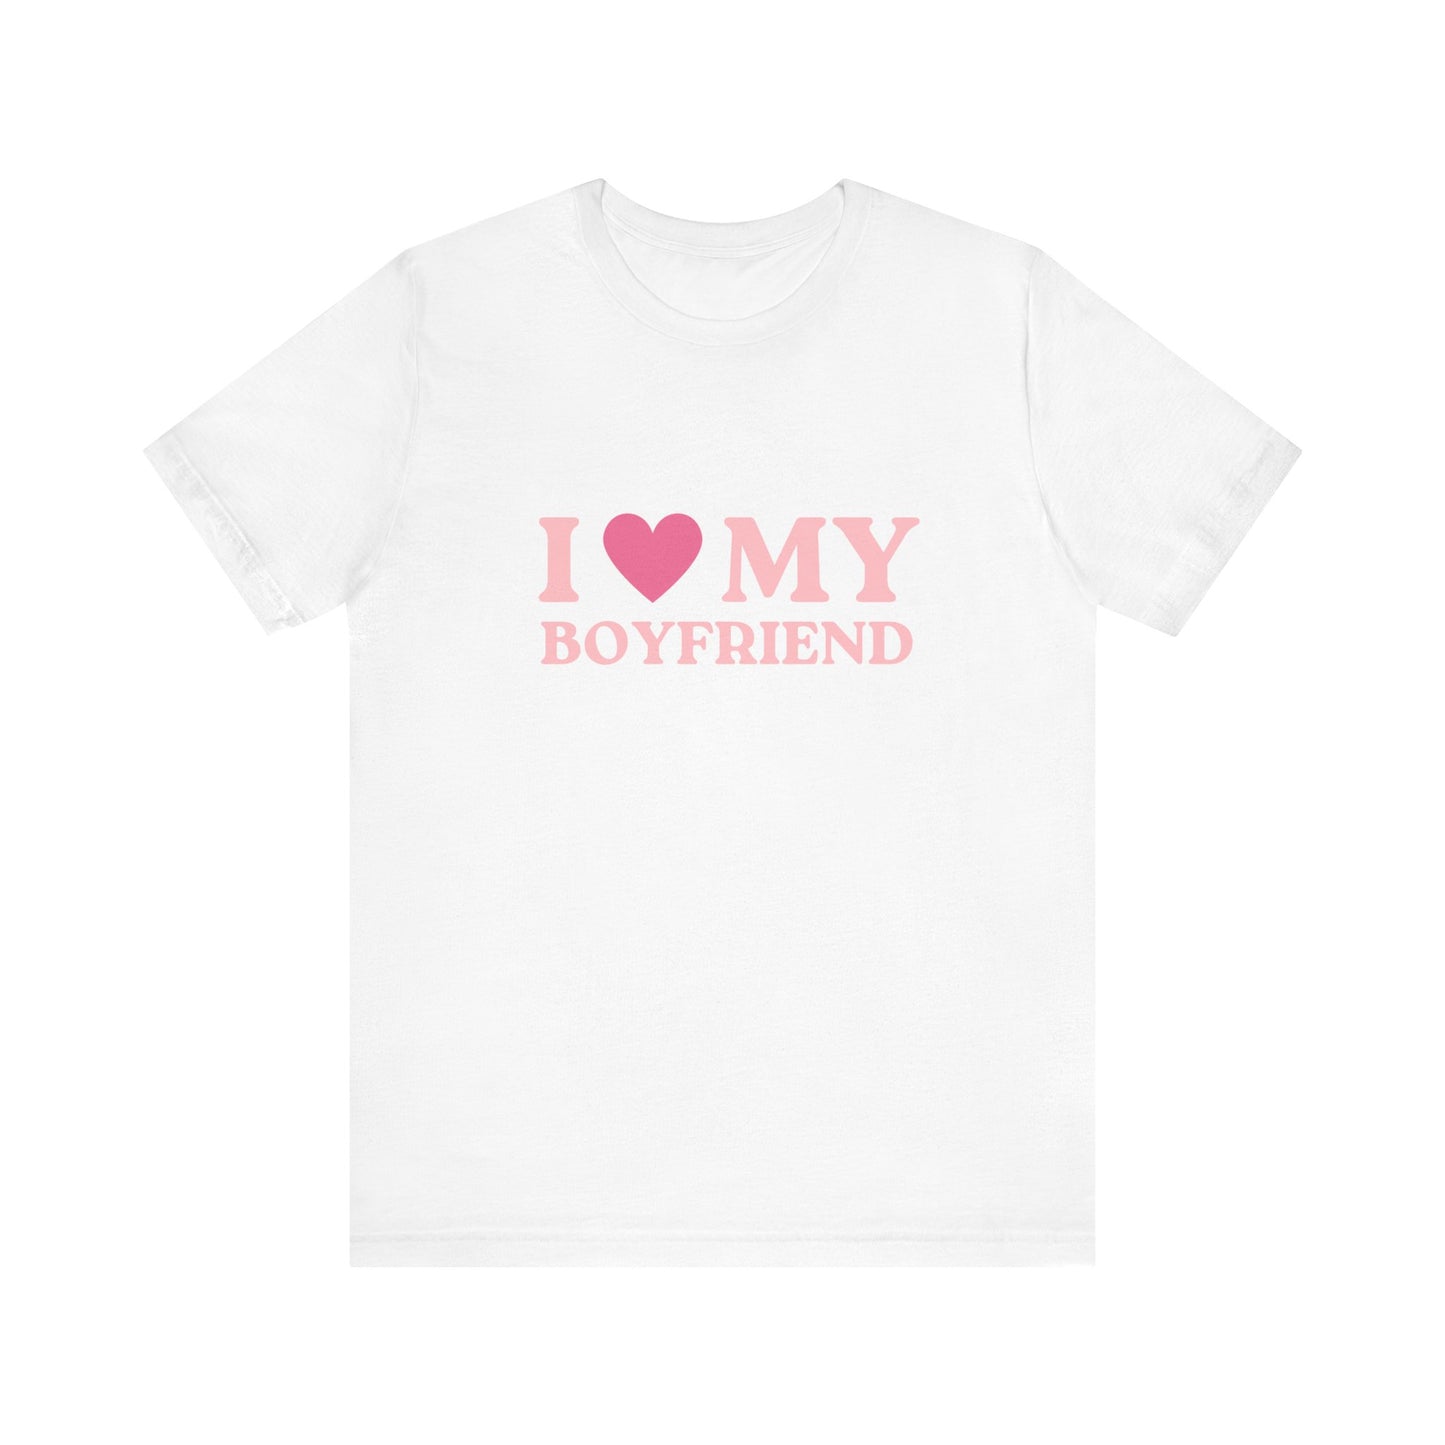 Love My Boyfriend Soft Unisex T-Shirt